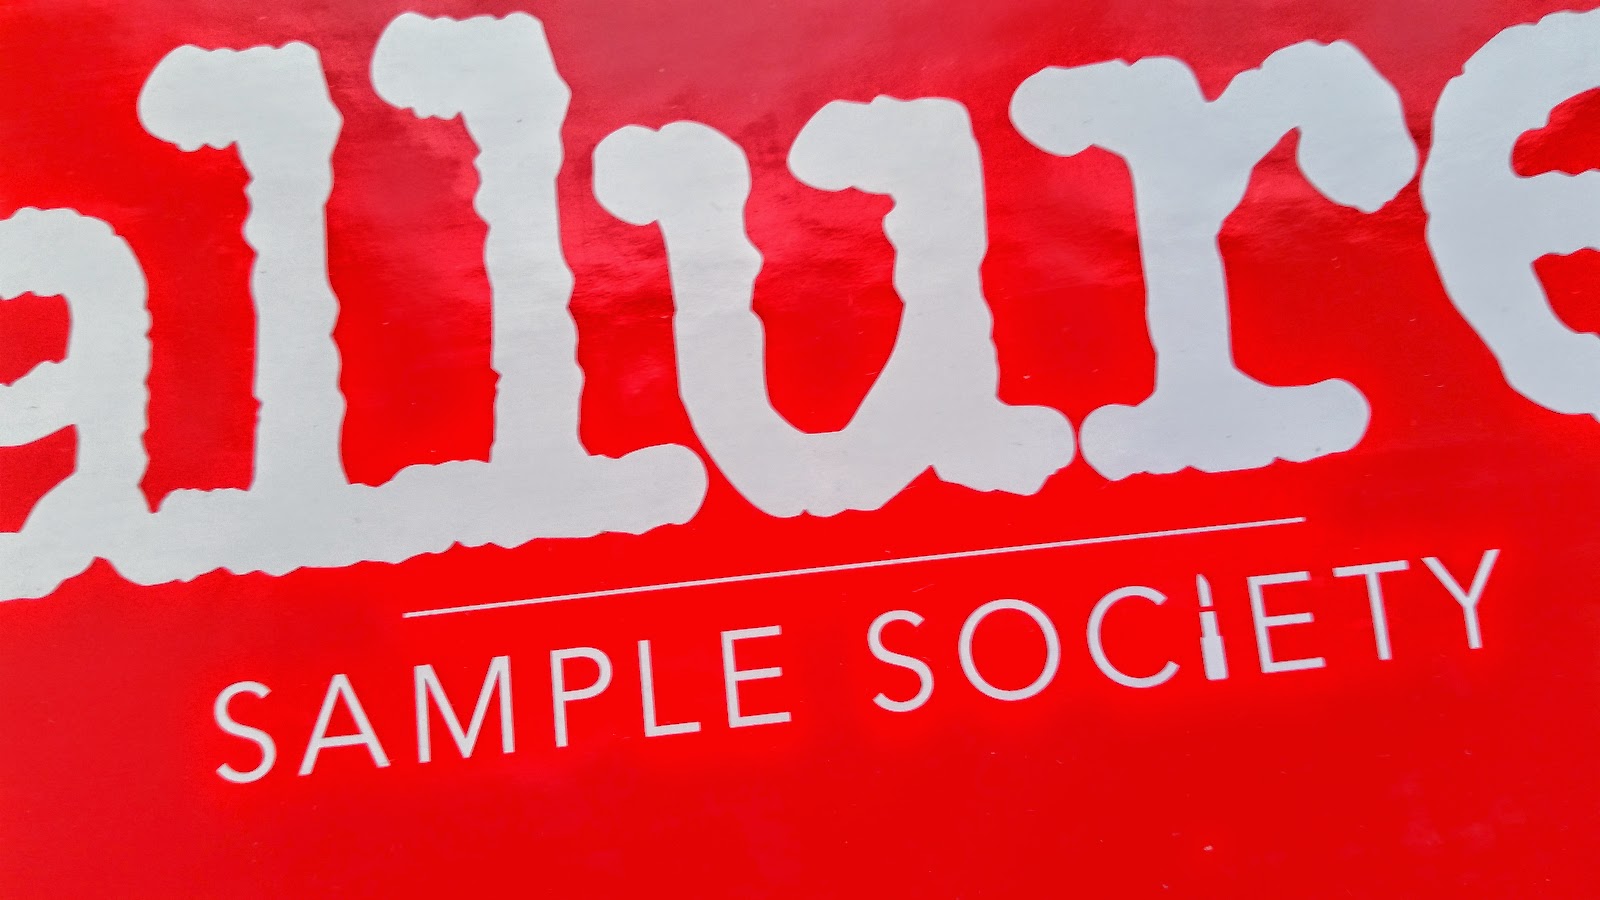  sample society september 2014 spoiler